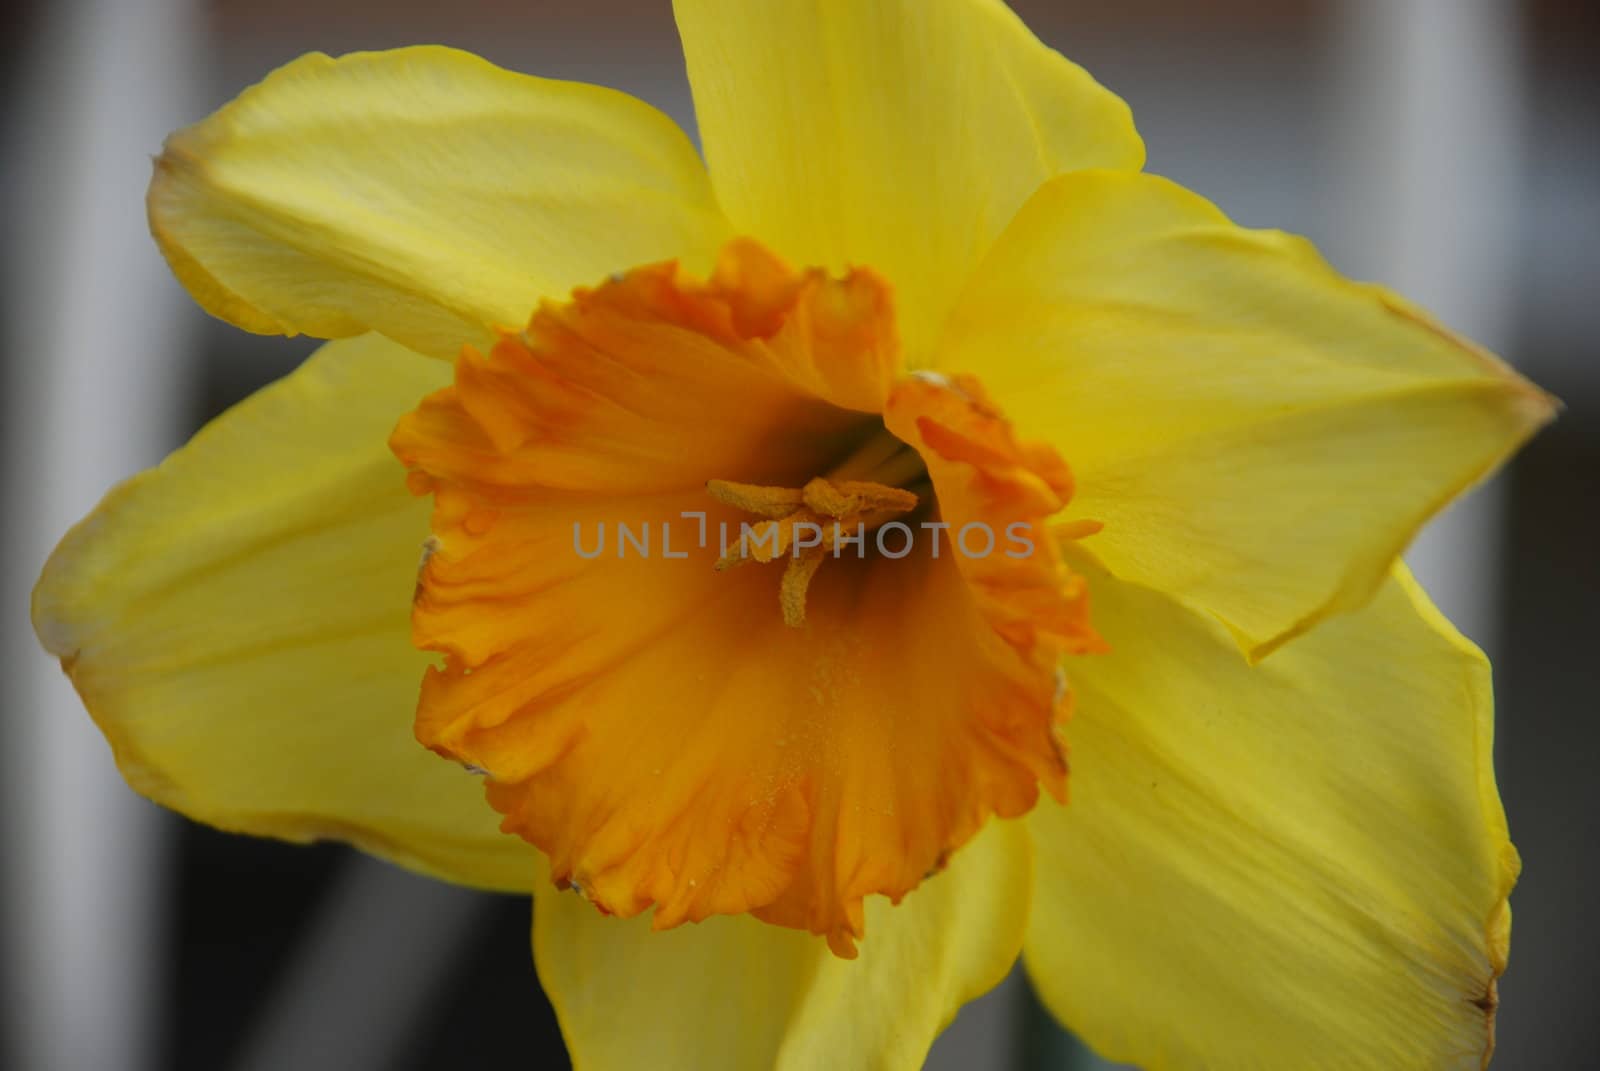 Yellow and orange Daffodil